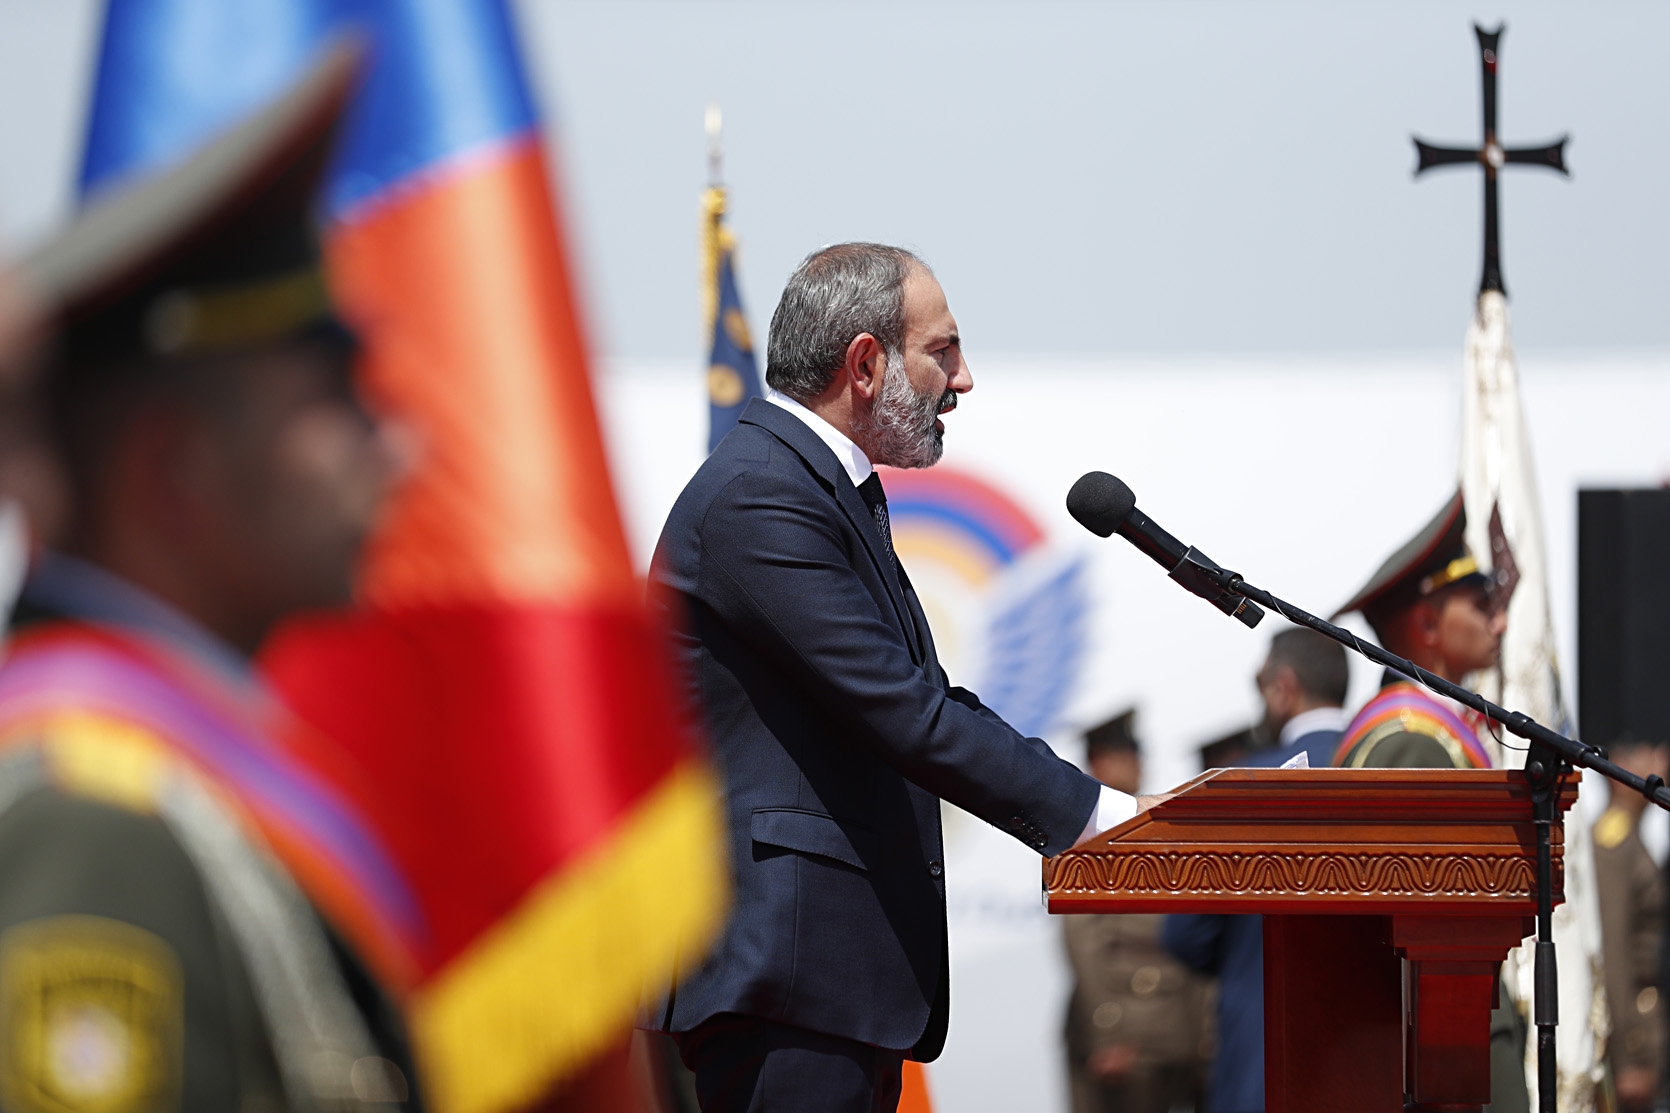 Αρμενία – Αζερμπαϊτζάν τώρα: Ο Πασινιάν ζητά εξηγήσεις από το ΝΑΤΟ για την Τουρκία